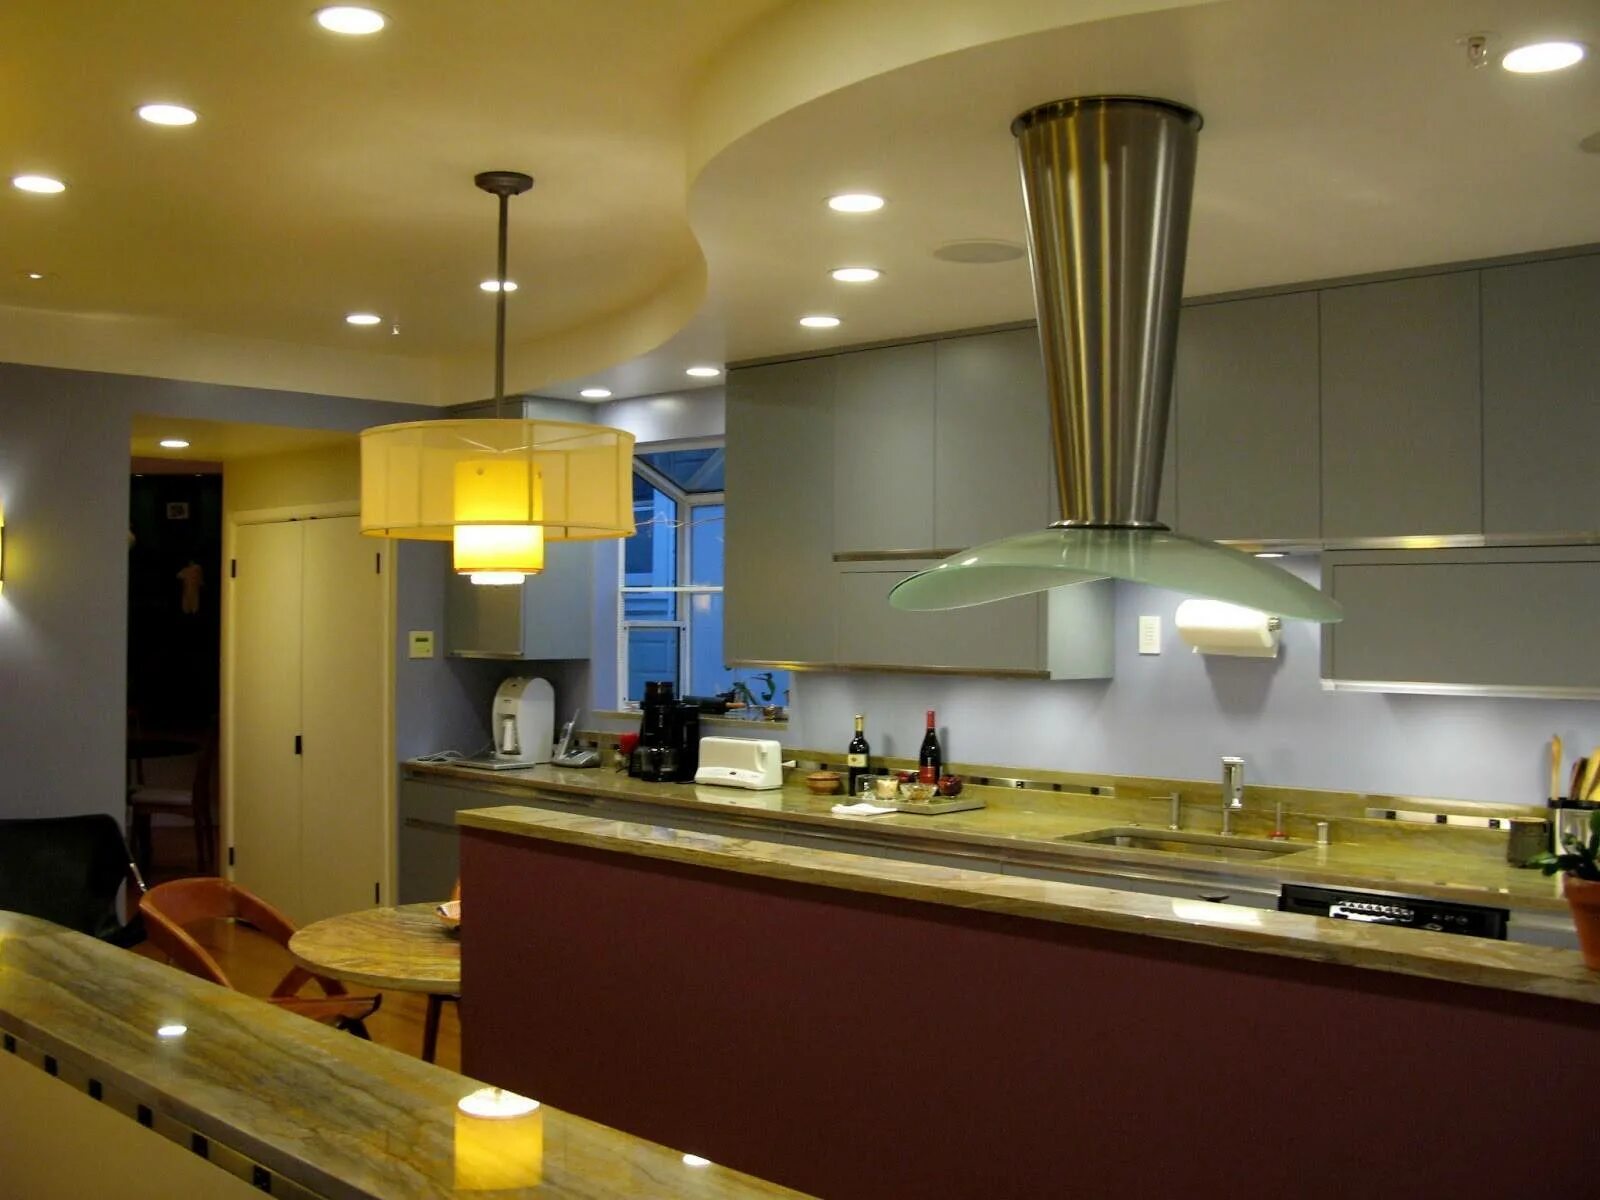 Освещение на кухне. Точечное освещение на кухне. Точечные светильники в интерьере кухни. Точечный потолок на кухне.